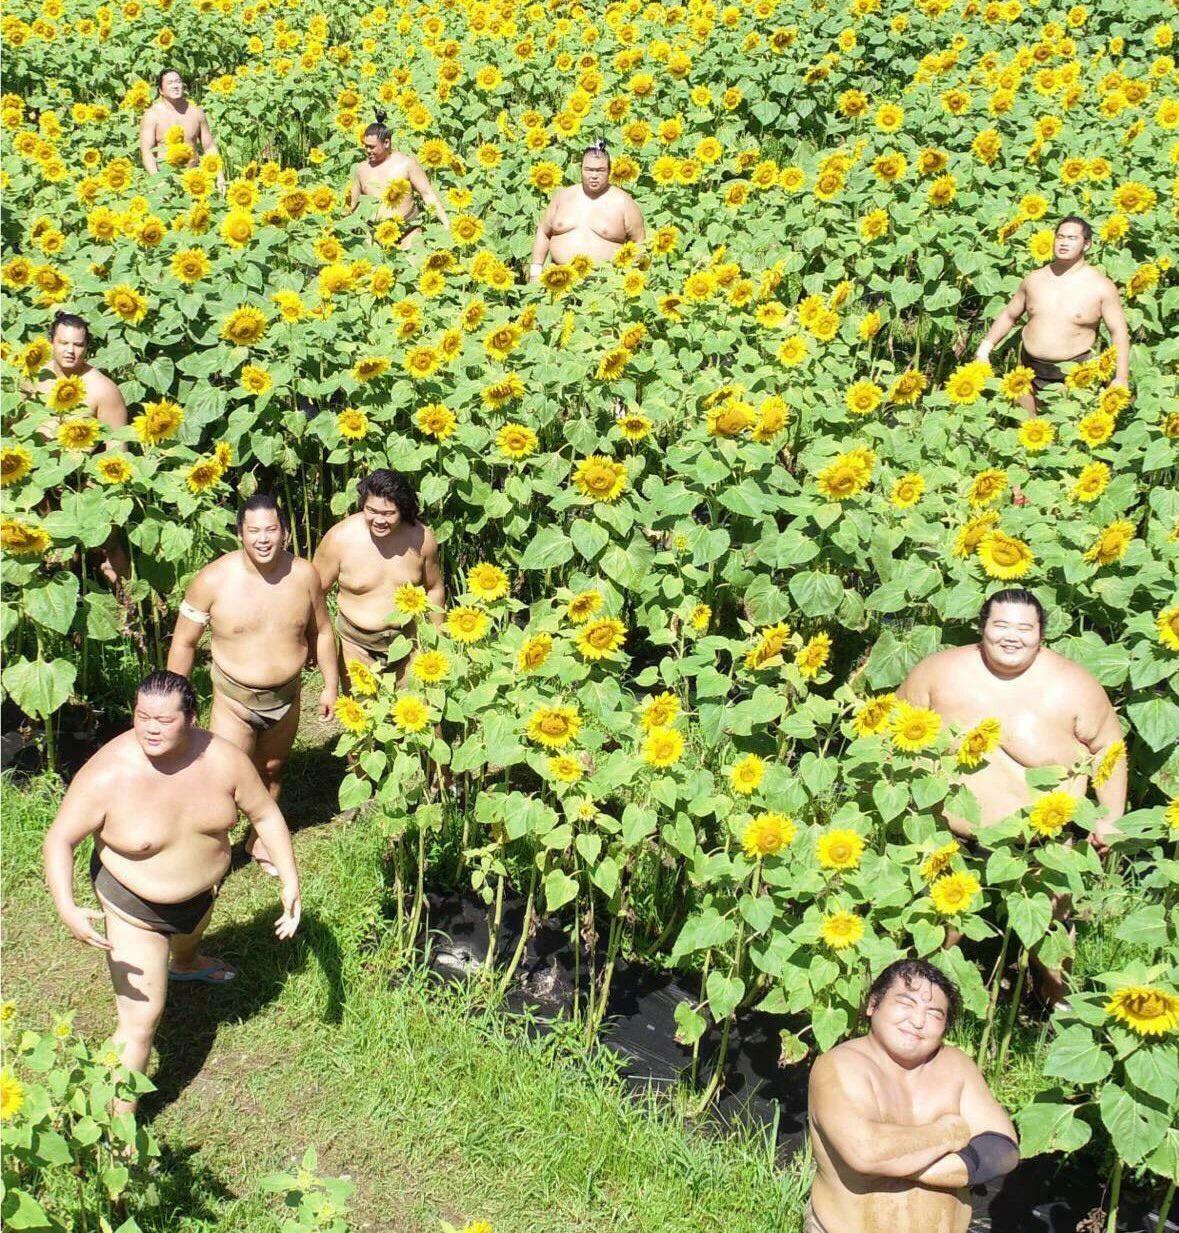 Les lutteurs de sumo dans le champ de tournesol